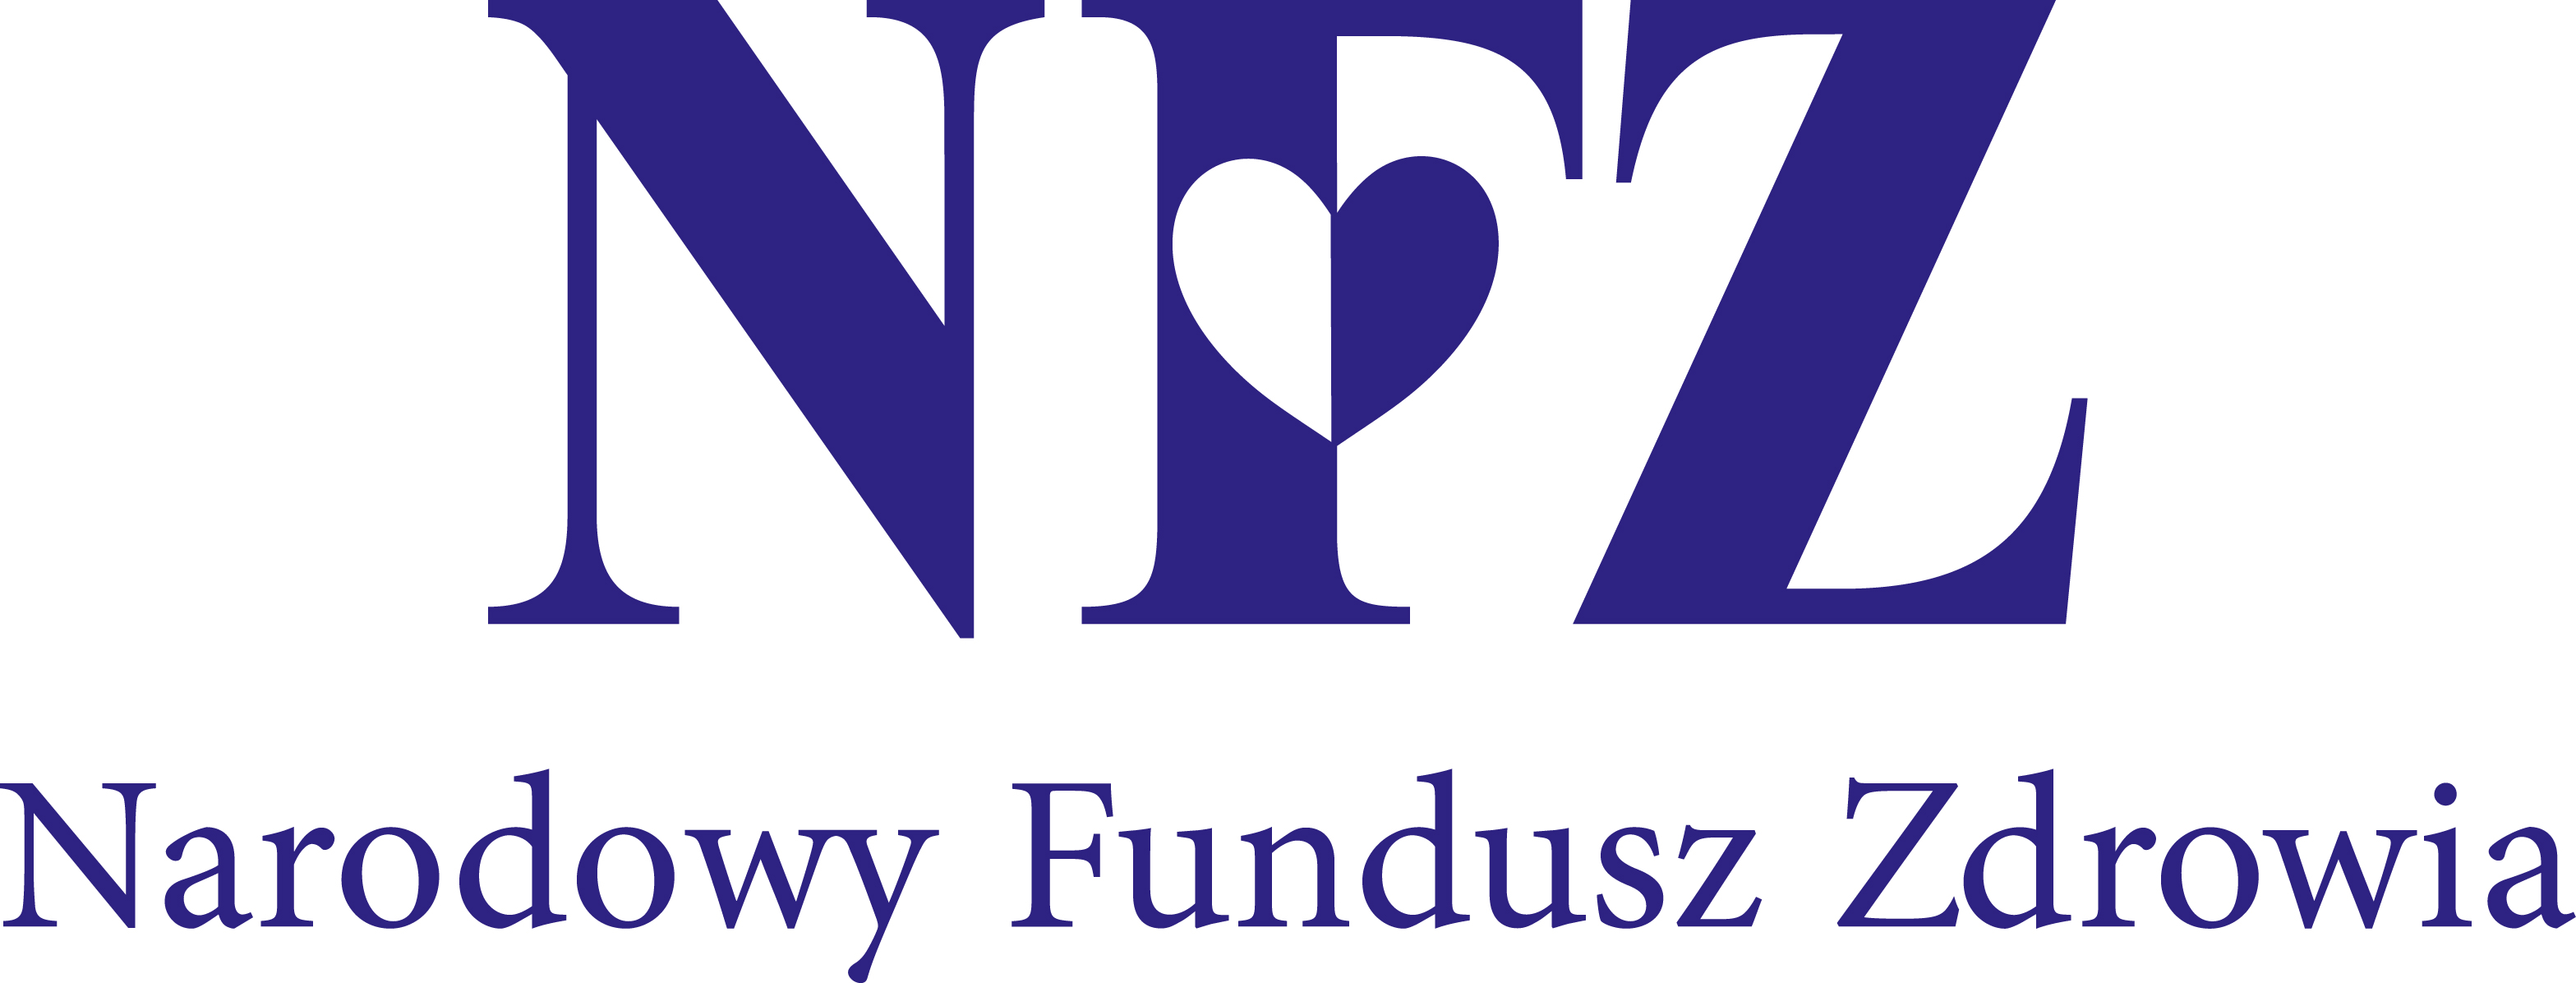 nfz logo A kolor